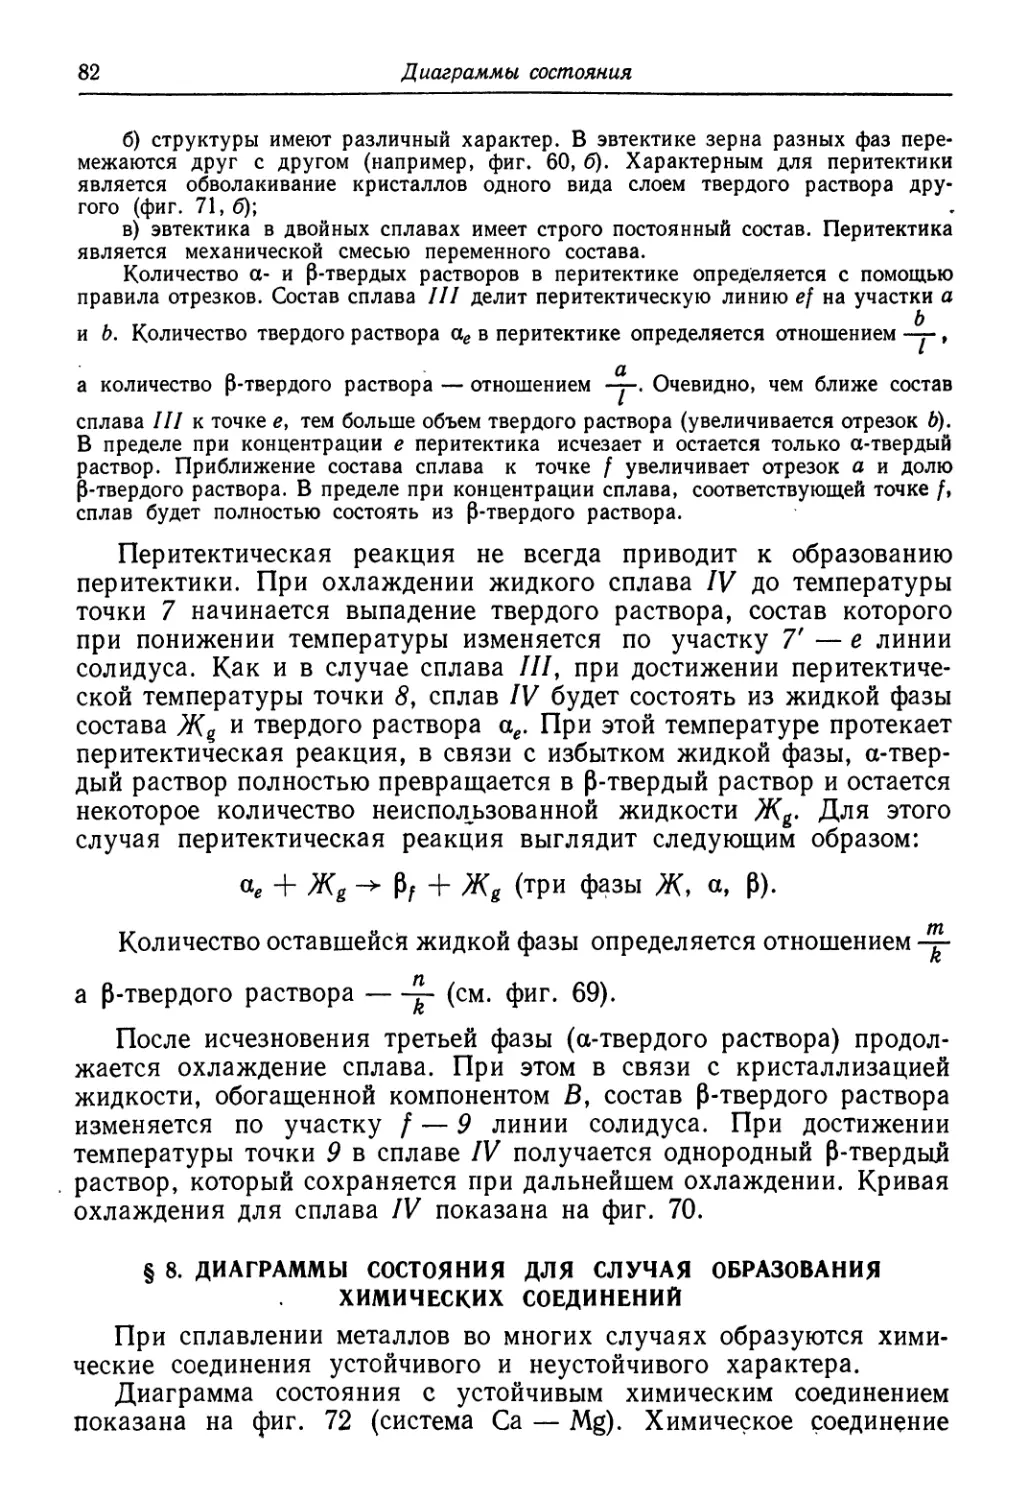 § 8. Диаграммы состояния для случая образования химических соединений